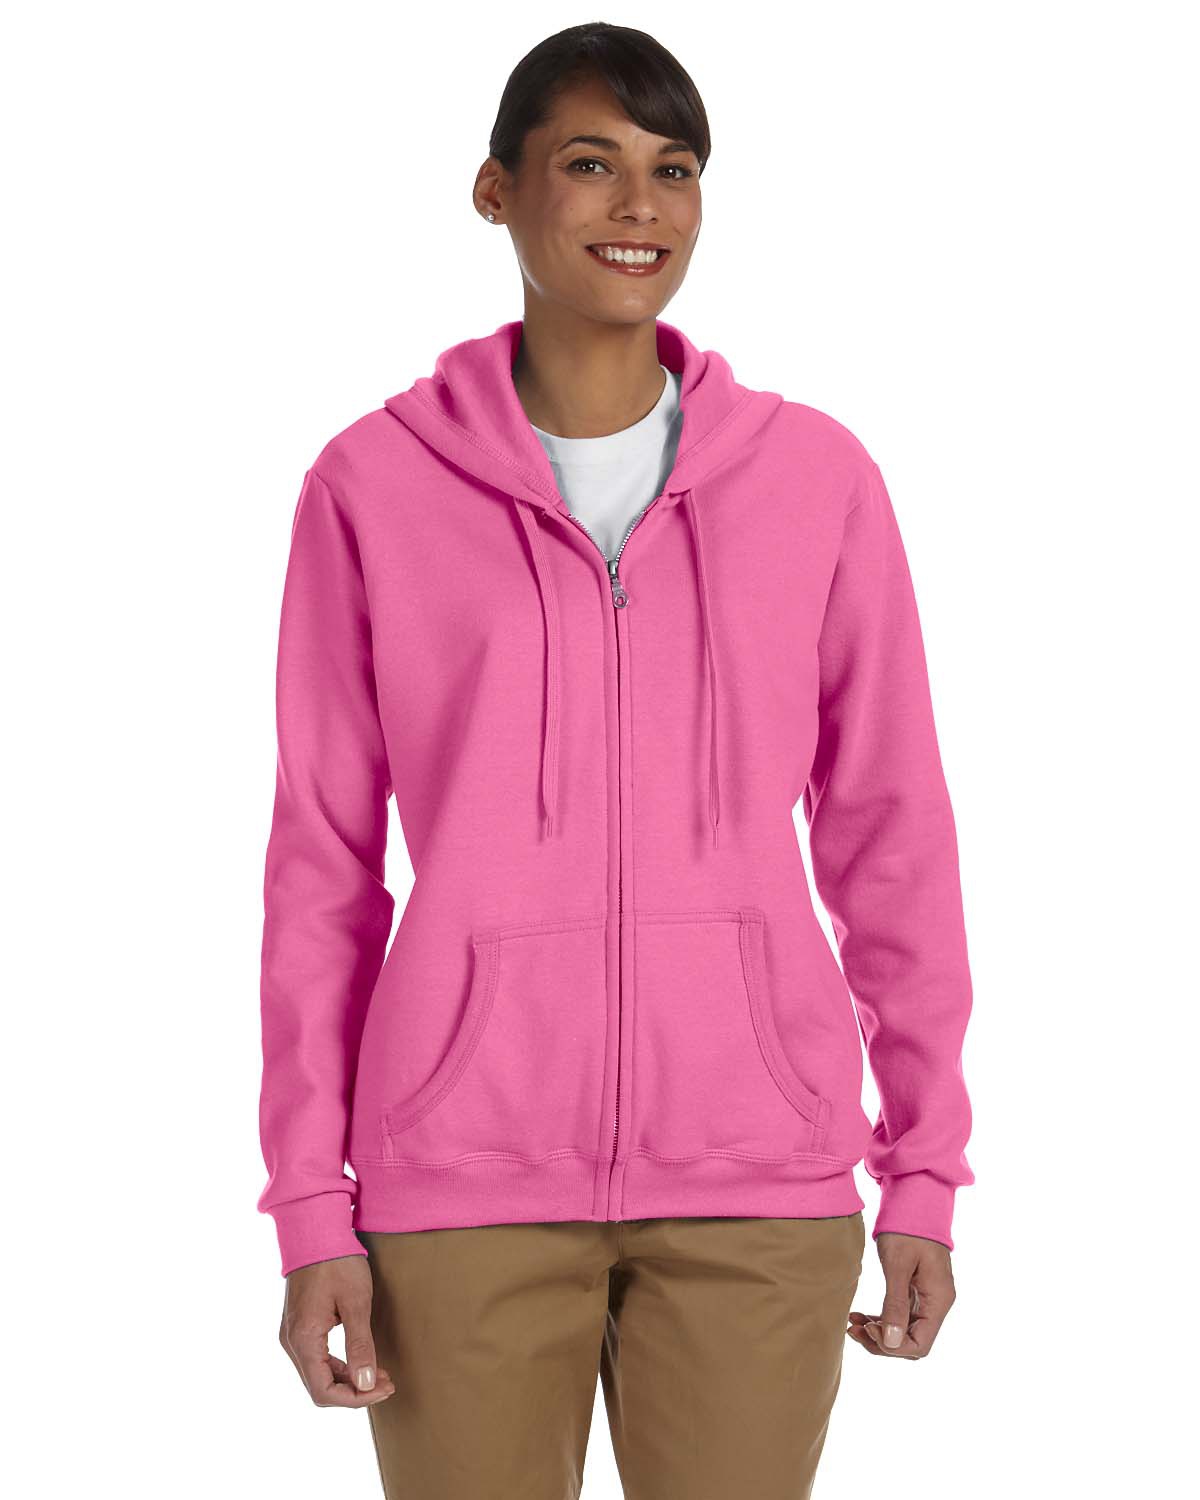 Womens Hoodie S M L XL 2XL Ladies Full Zip Gildan Heavy Blend Hooded Sweatshirt 